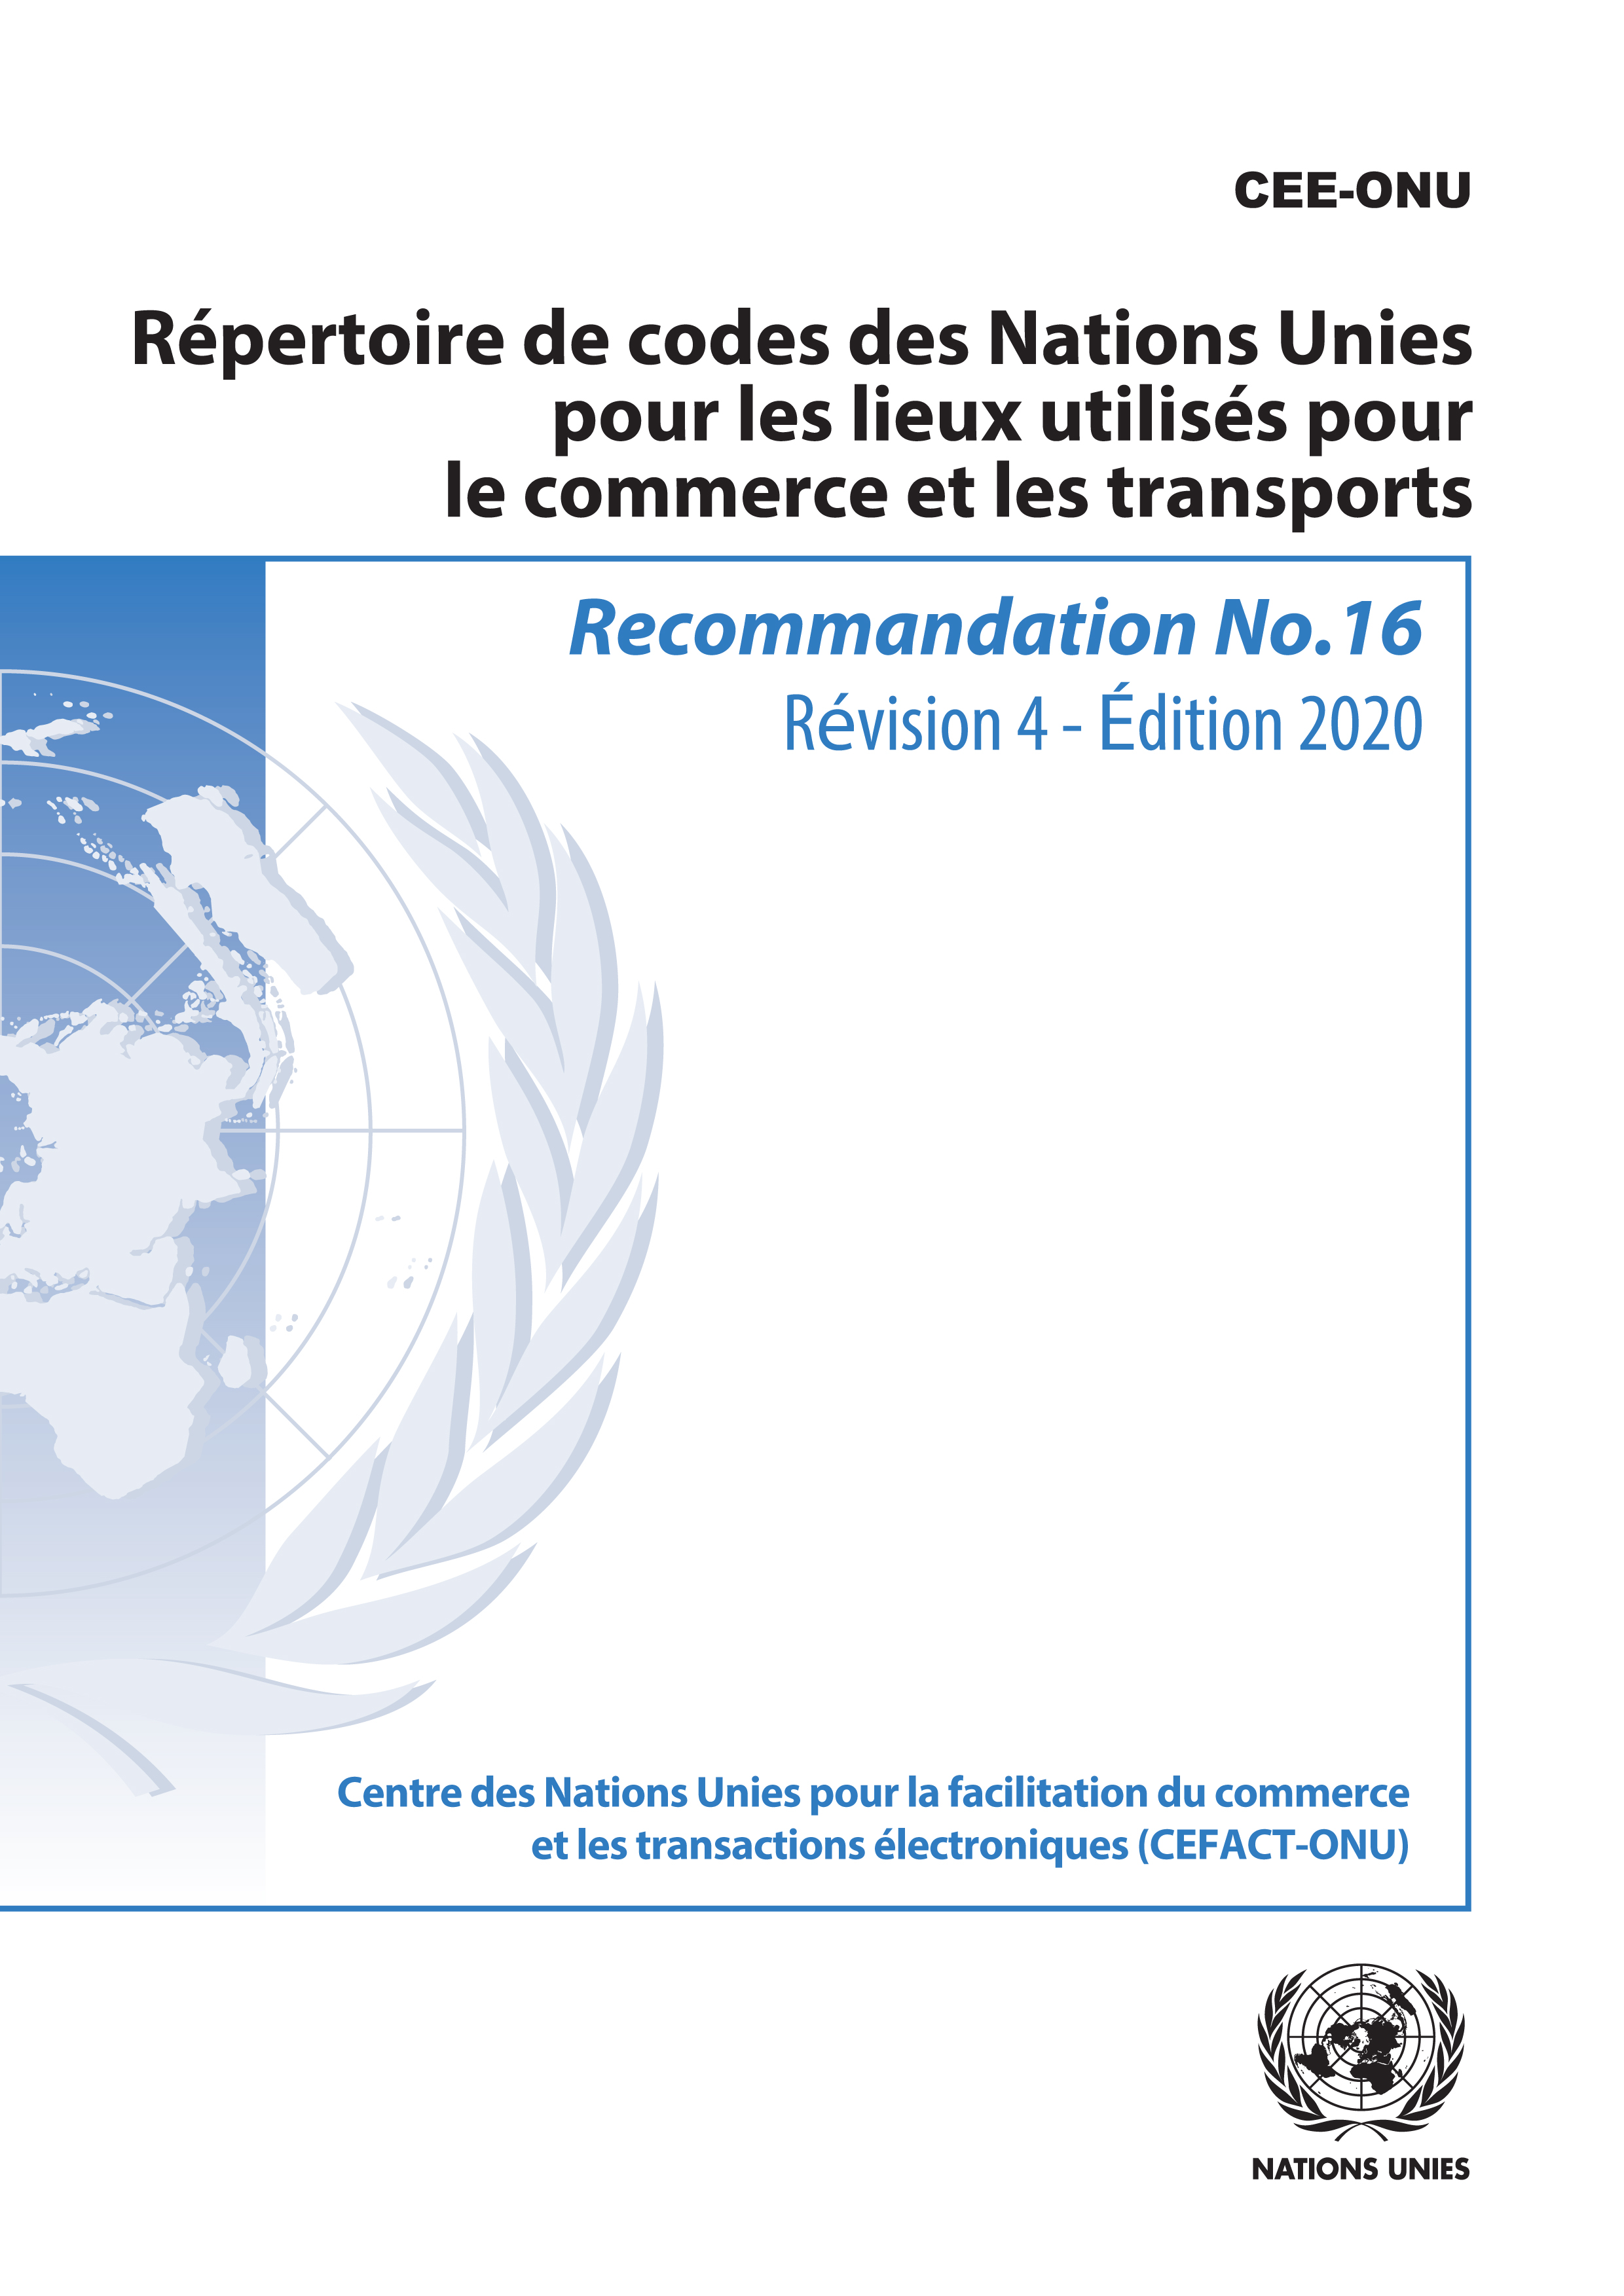 image of Recommandation No. 16: Répertoire de codes des Nations Unies pour les lieux utilisés pour le commerce et les transports